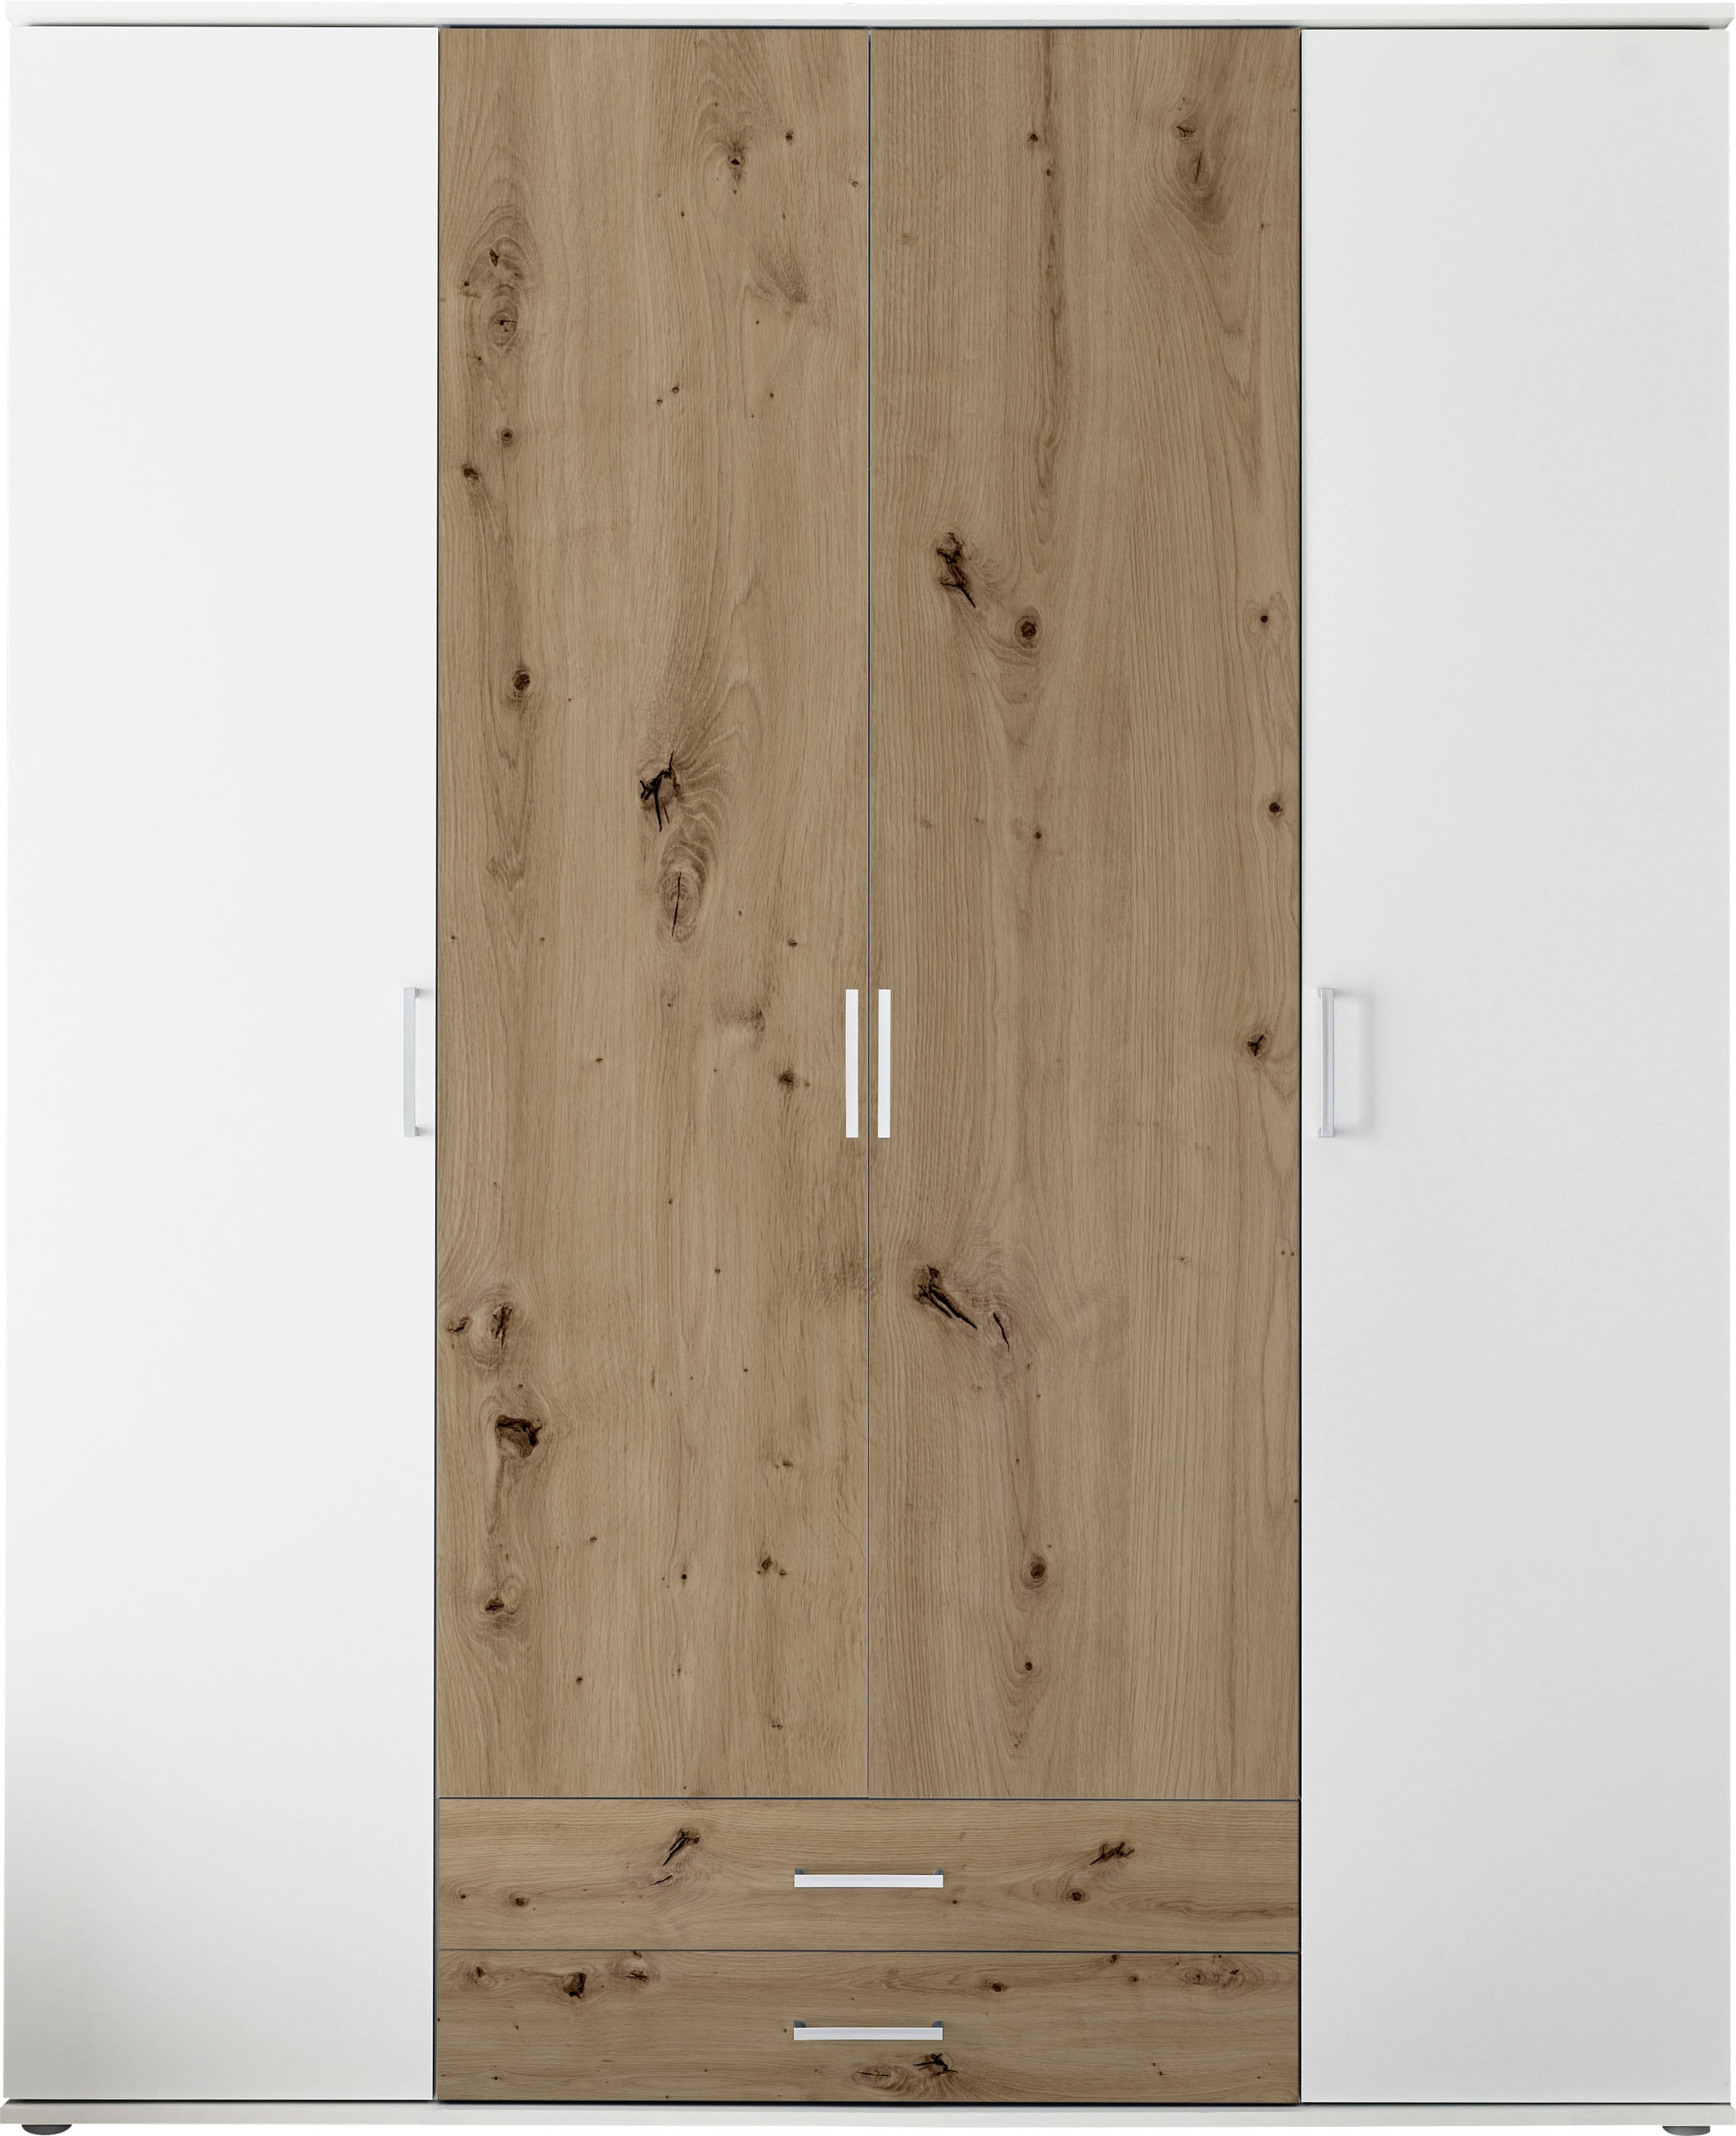 MARBURG Kleiderschrank in Weiß, Artisan Eiche Optik - Vielseitiger Drehtürenschrank 4-türig für Ihr Schlafzimmer - 160 x 196 x 54 cm (B/H/T)